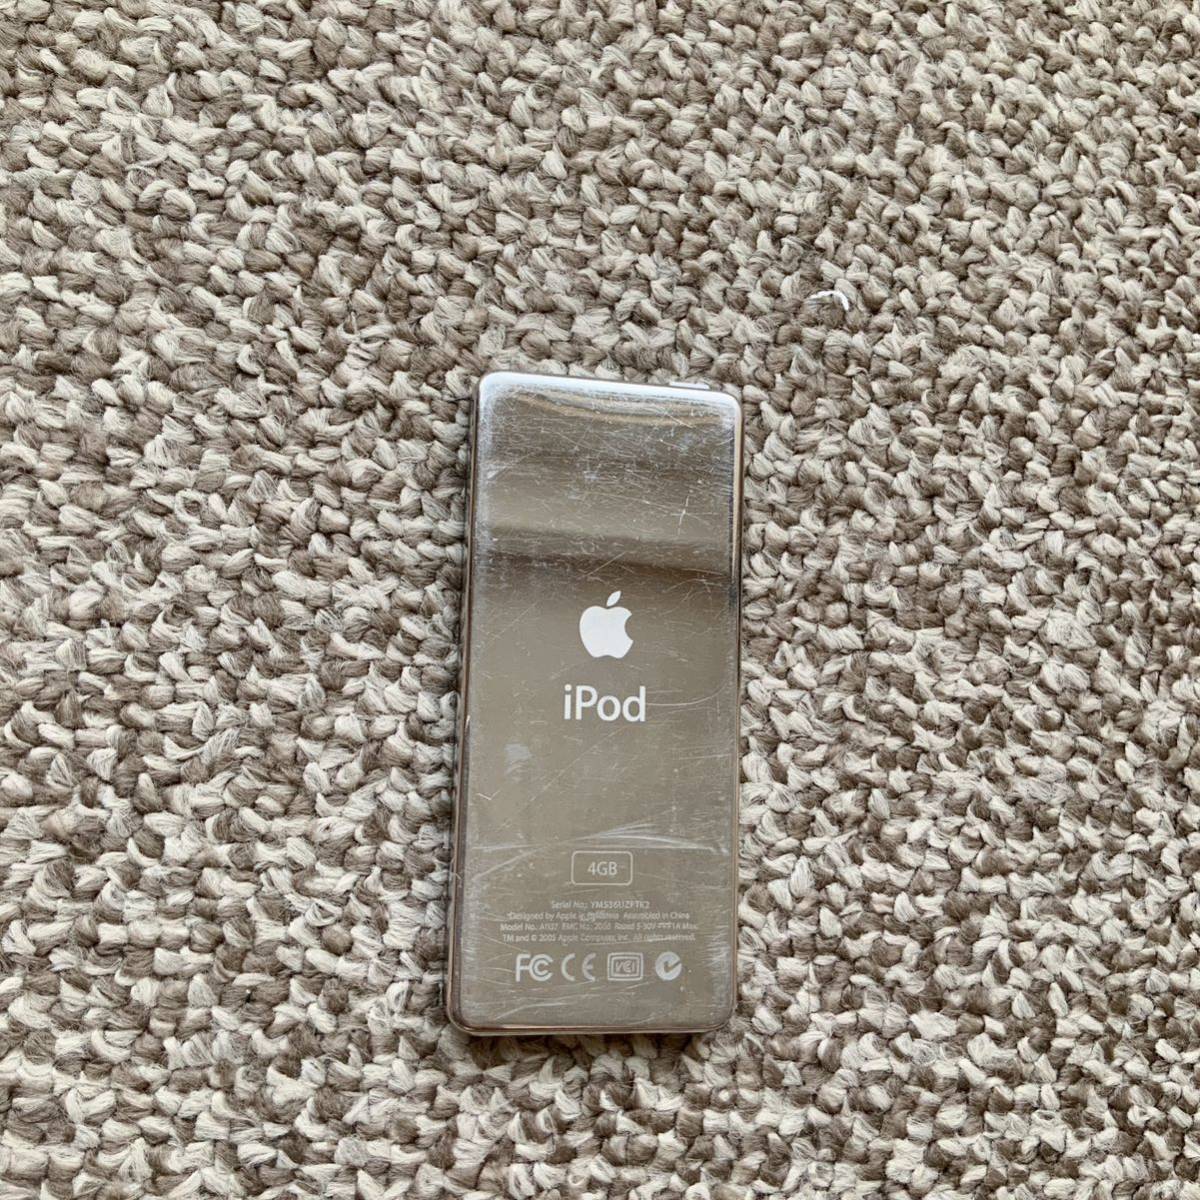 【送料無料】iPod nano 第1世代 4GB Apple アップル アイポッドナノ 本体 初代_画像3